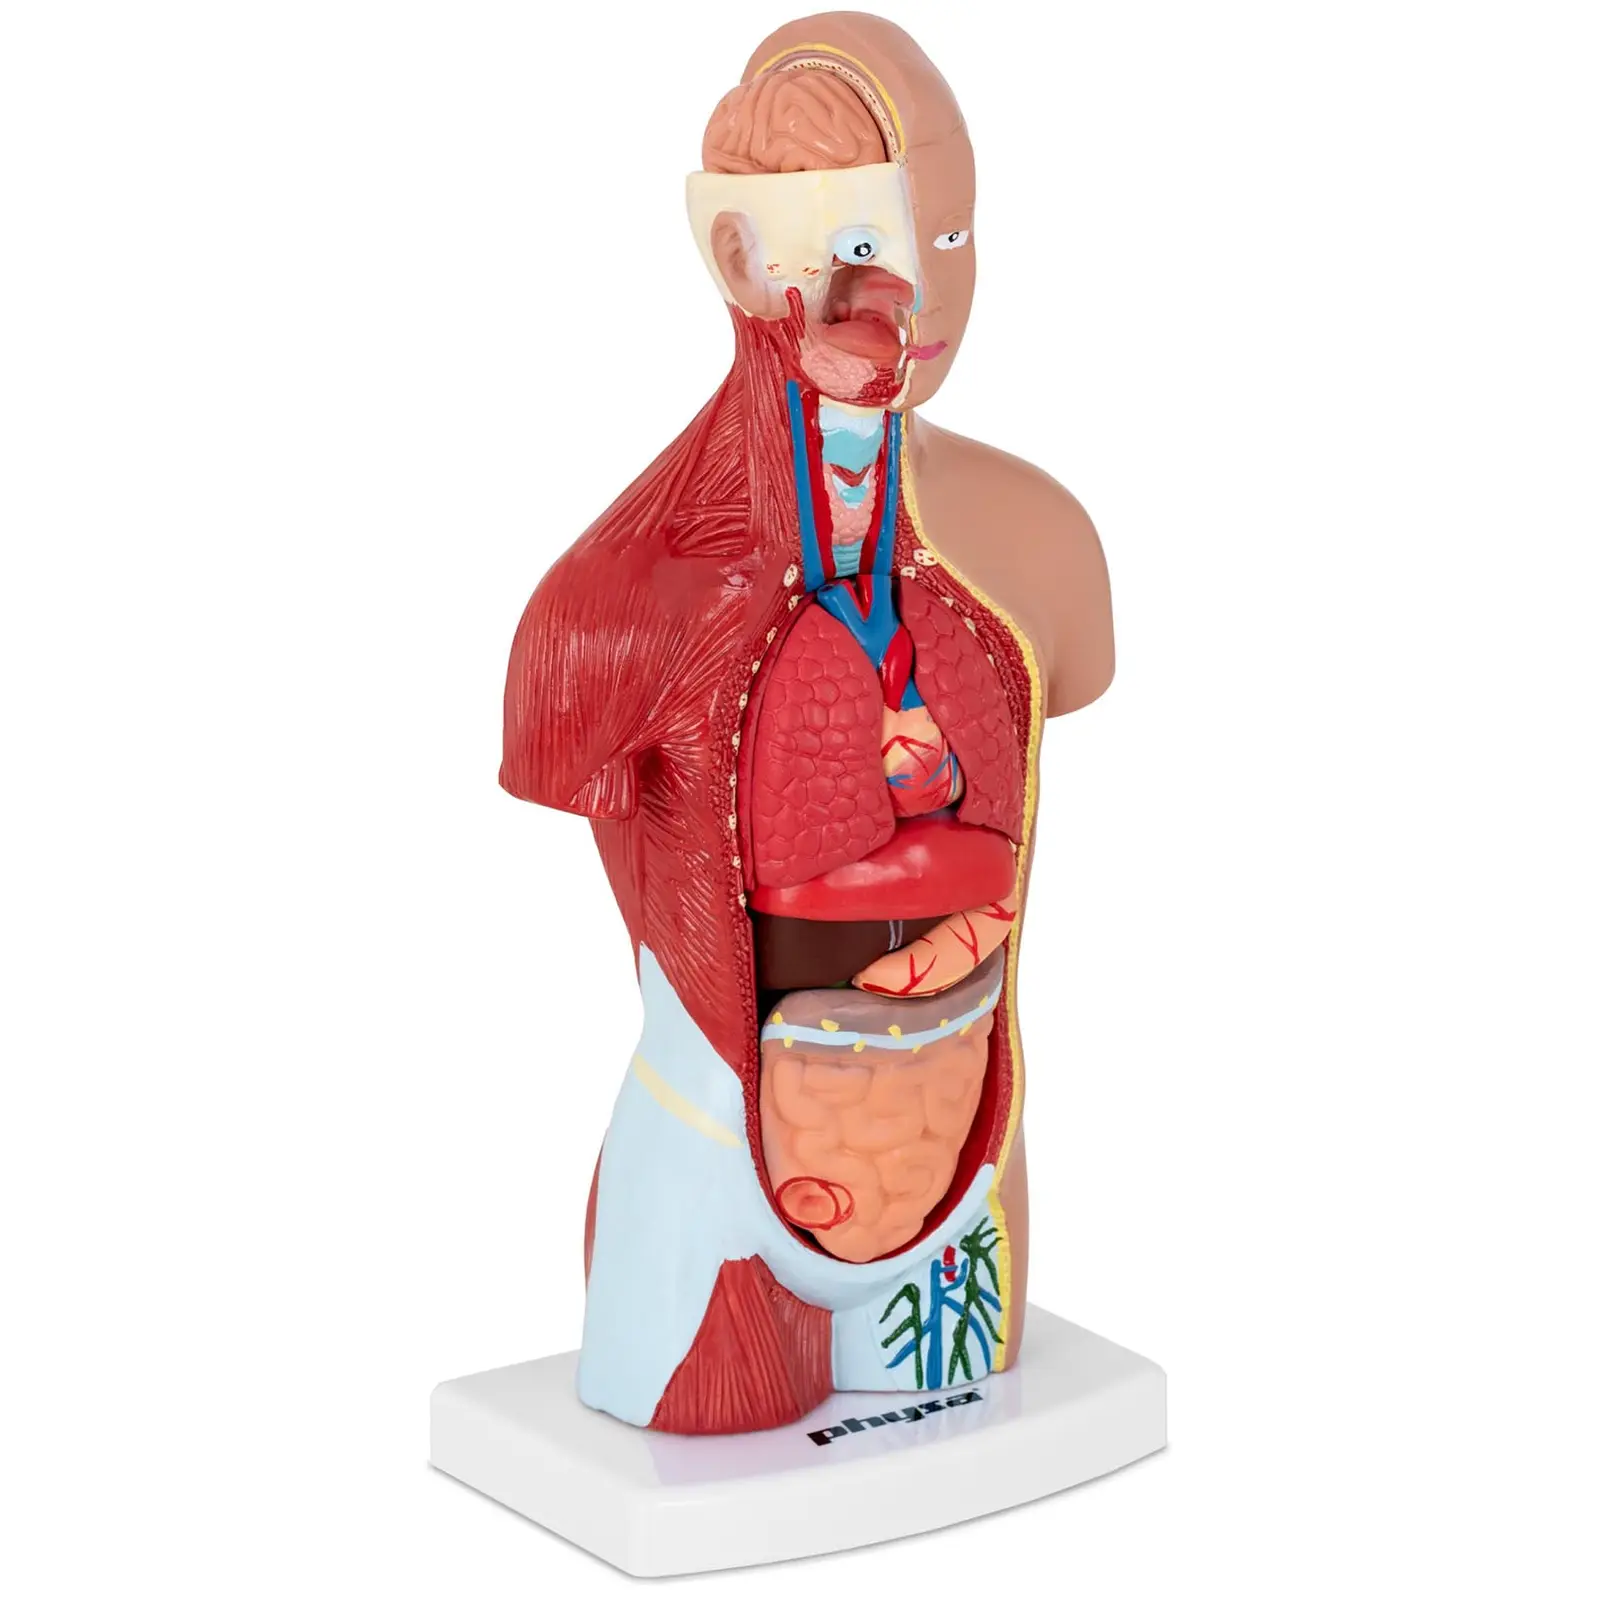 Modello torso umano - Smontabile in 15 pezzi - Altezza: 26 cm